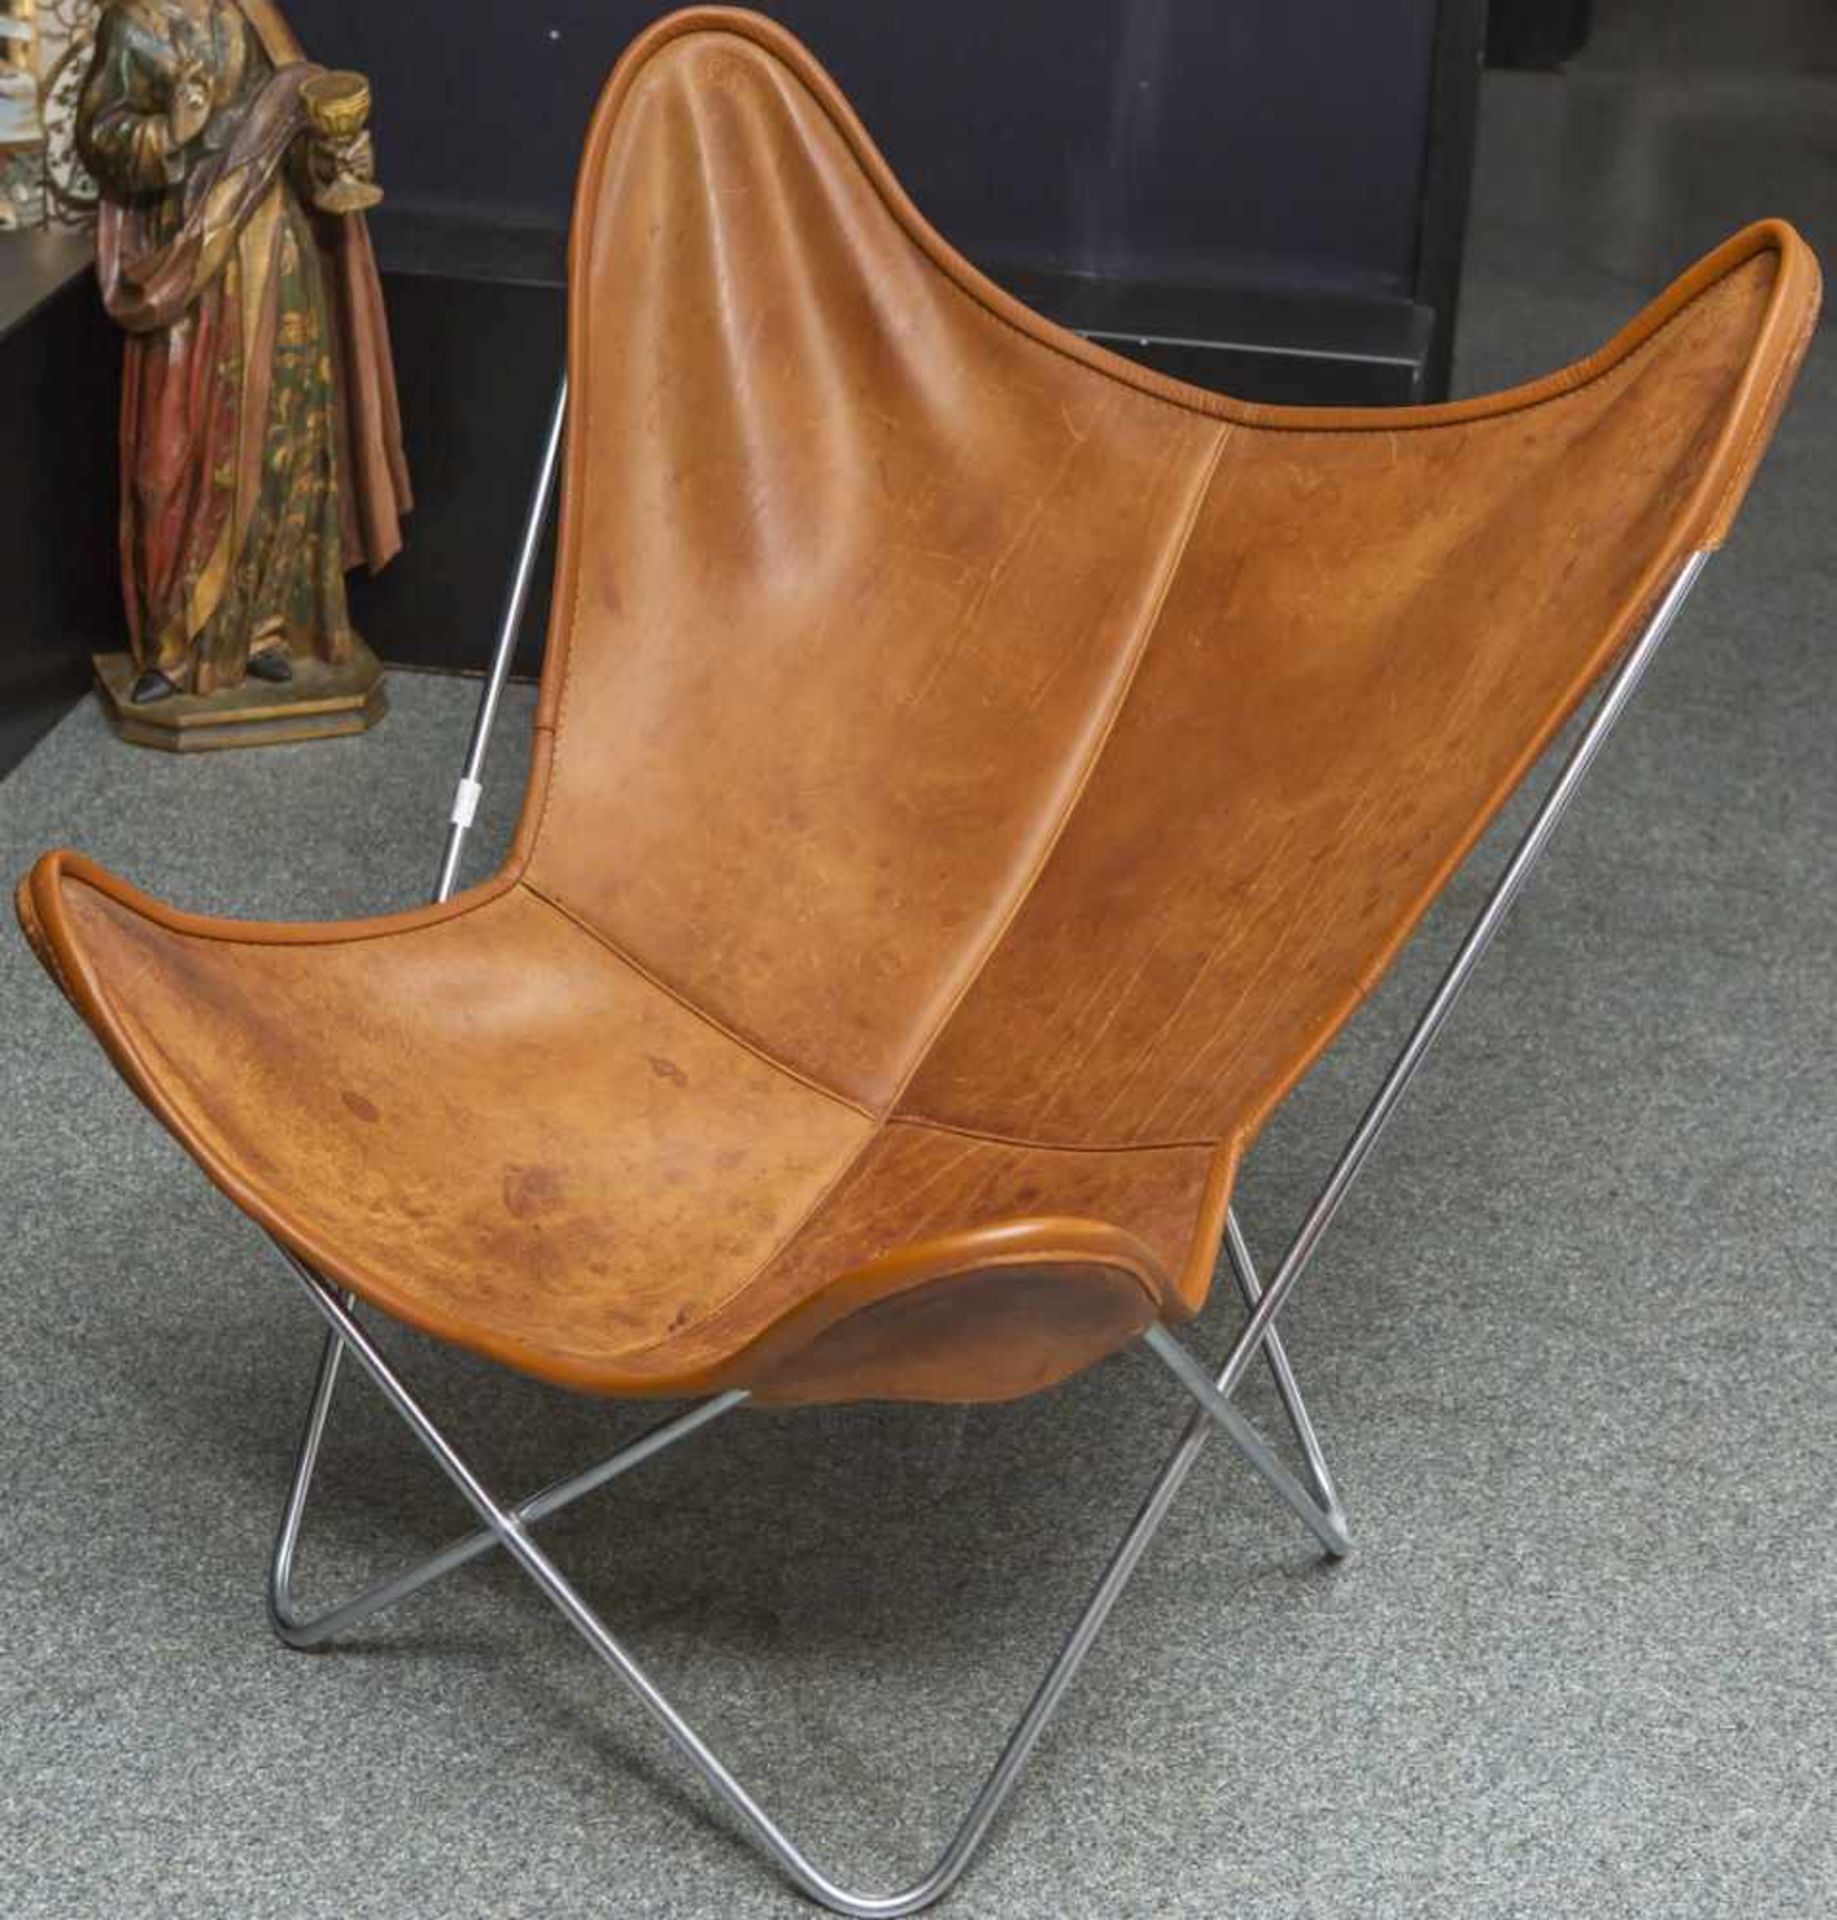 Hardoy Chair (auch Butterfly Sessel genannt), Entwurf 1939 von Ferrari-Hardoy, das hier angebotene